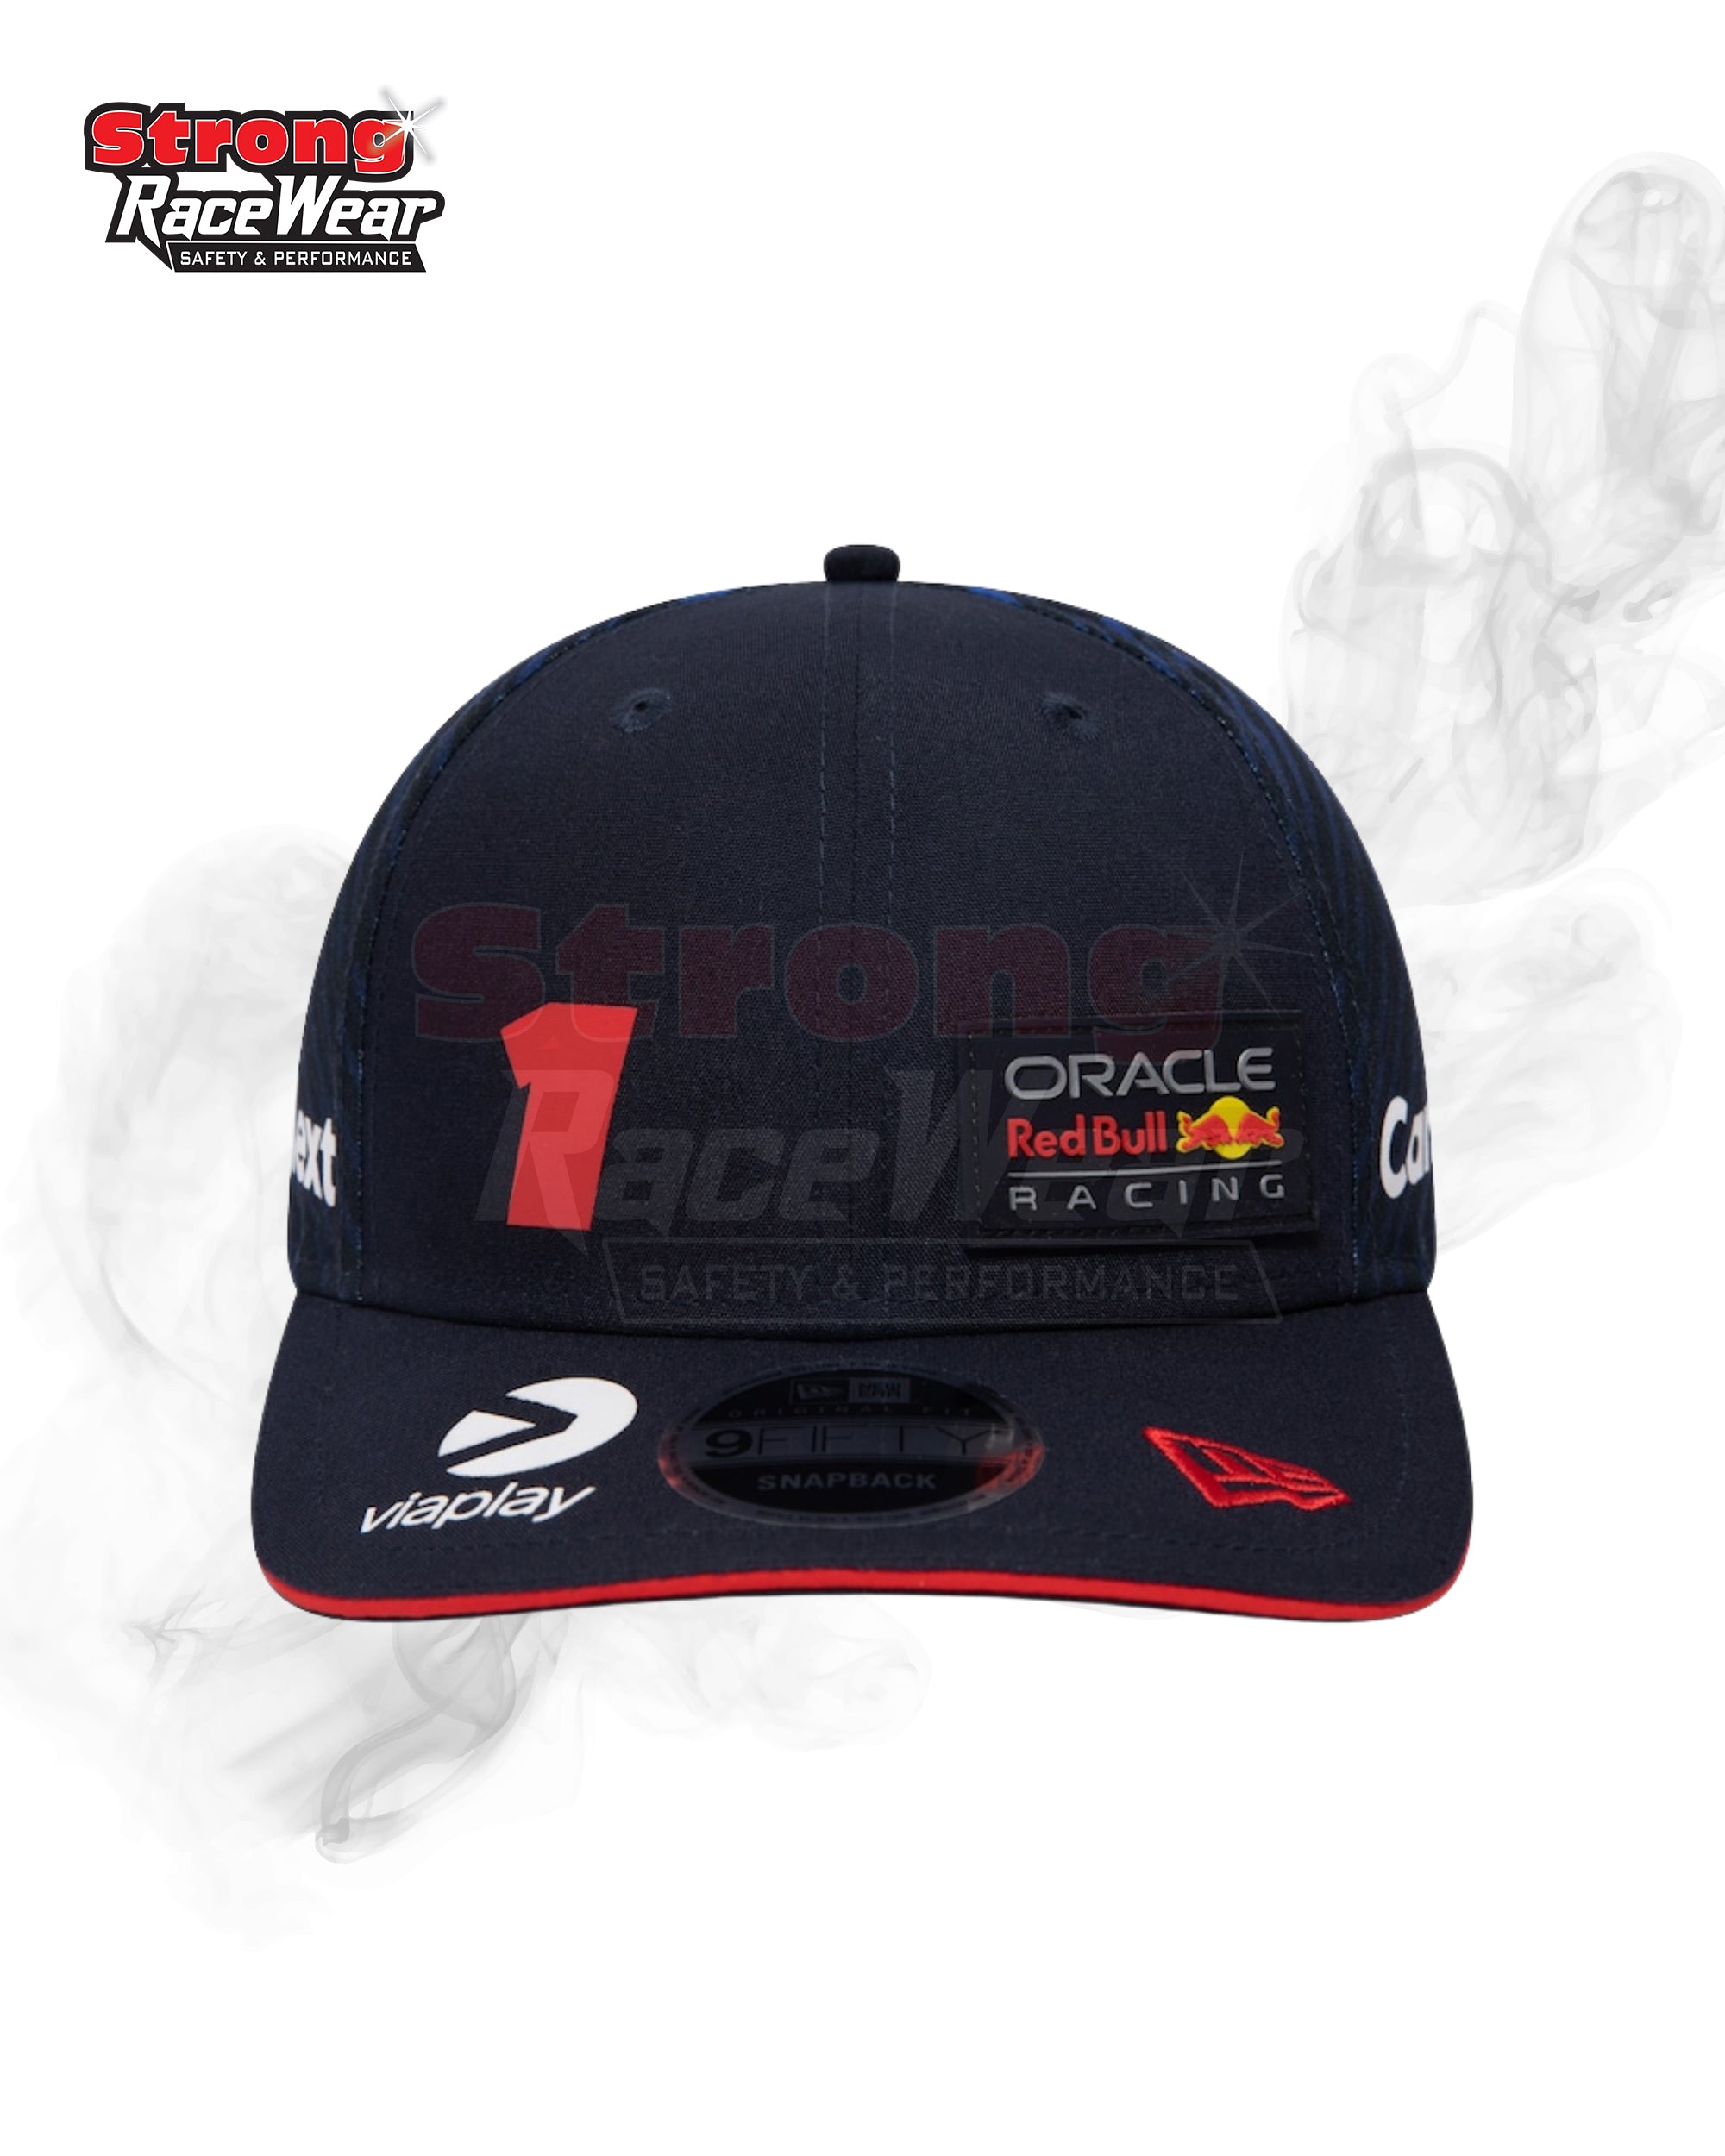 Red Bull Racing Cap